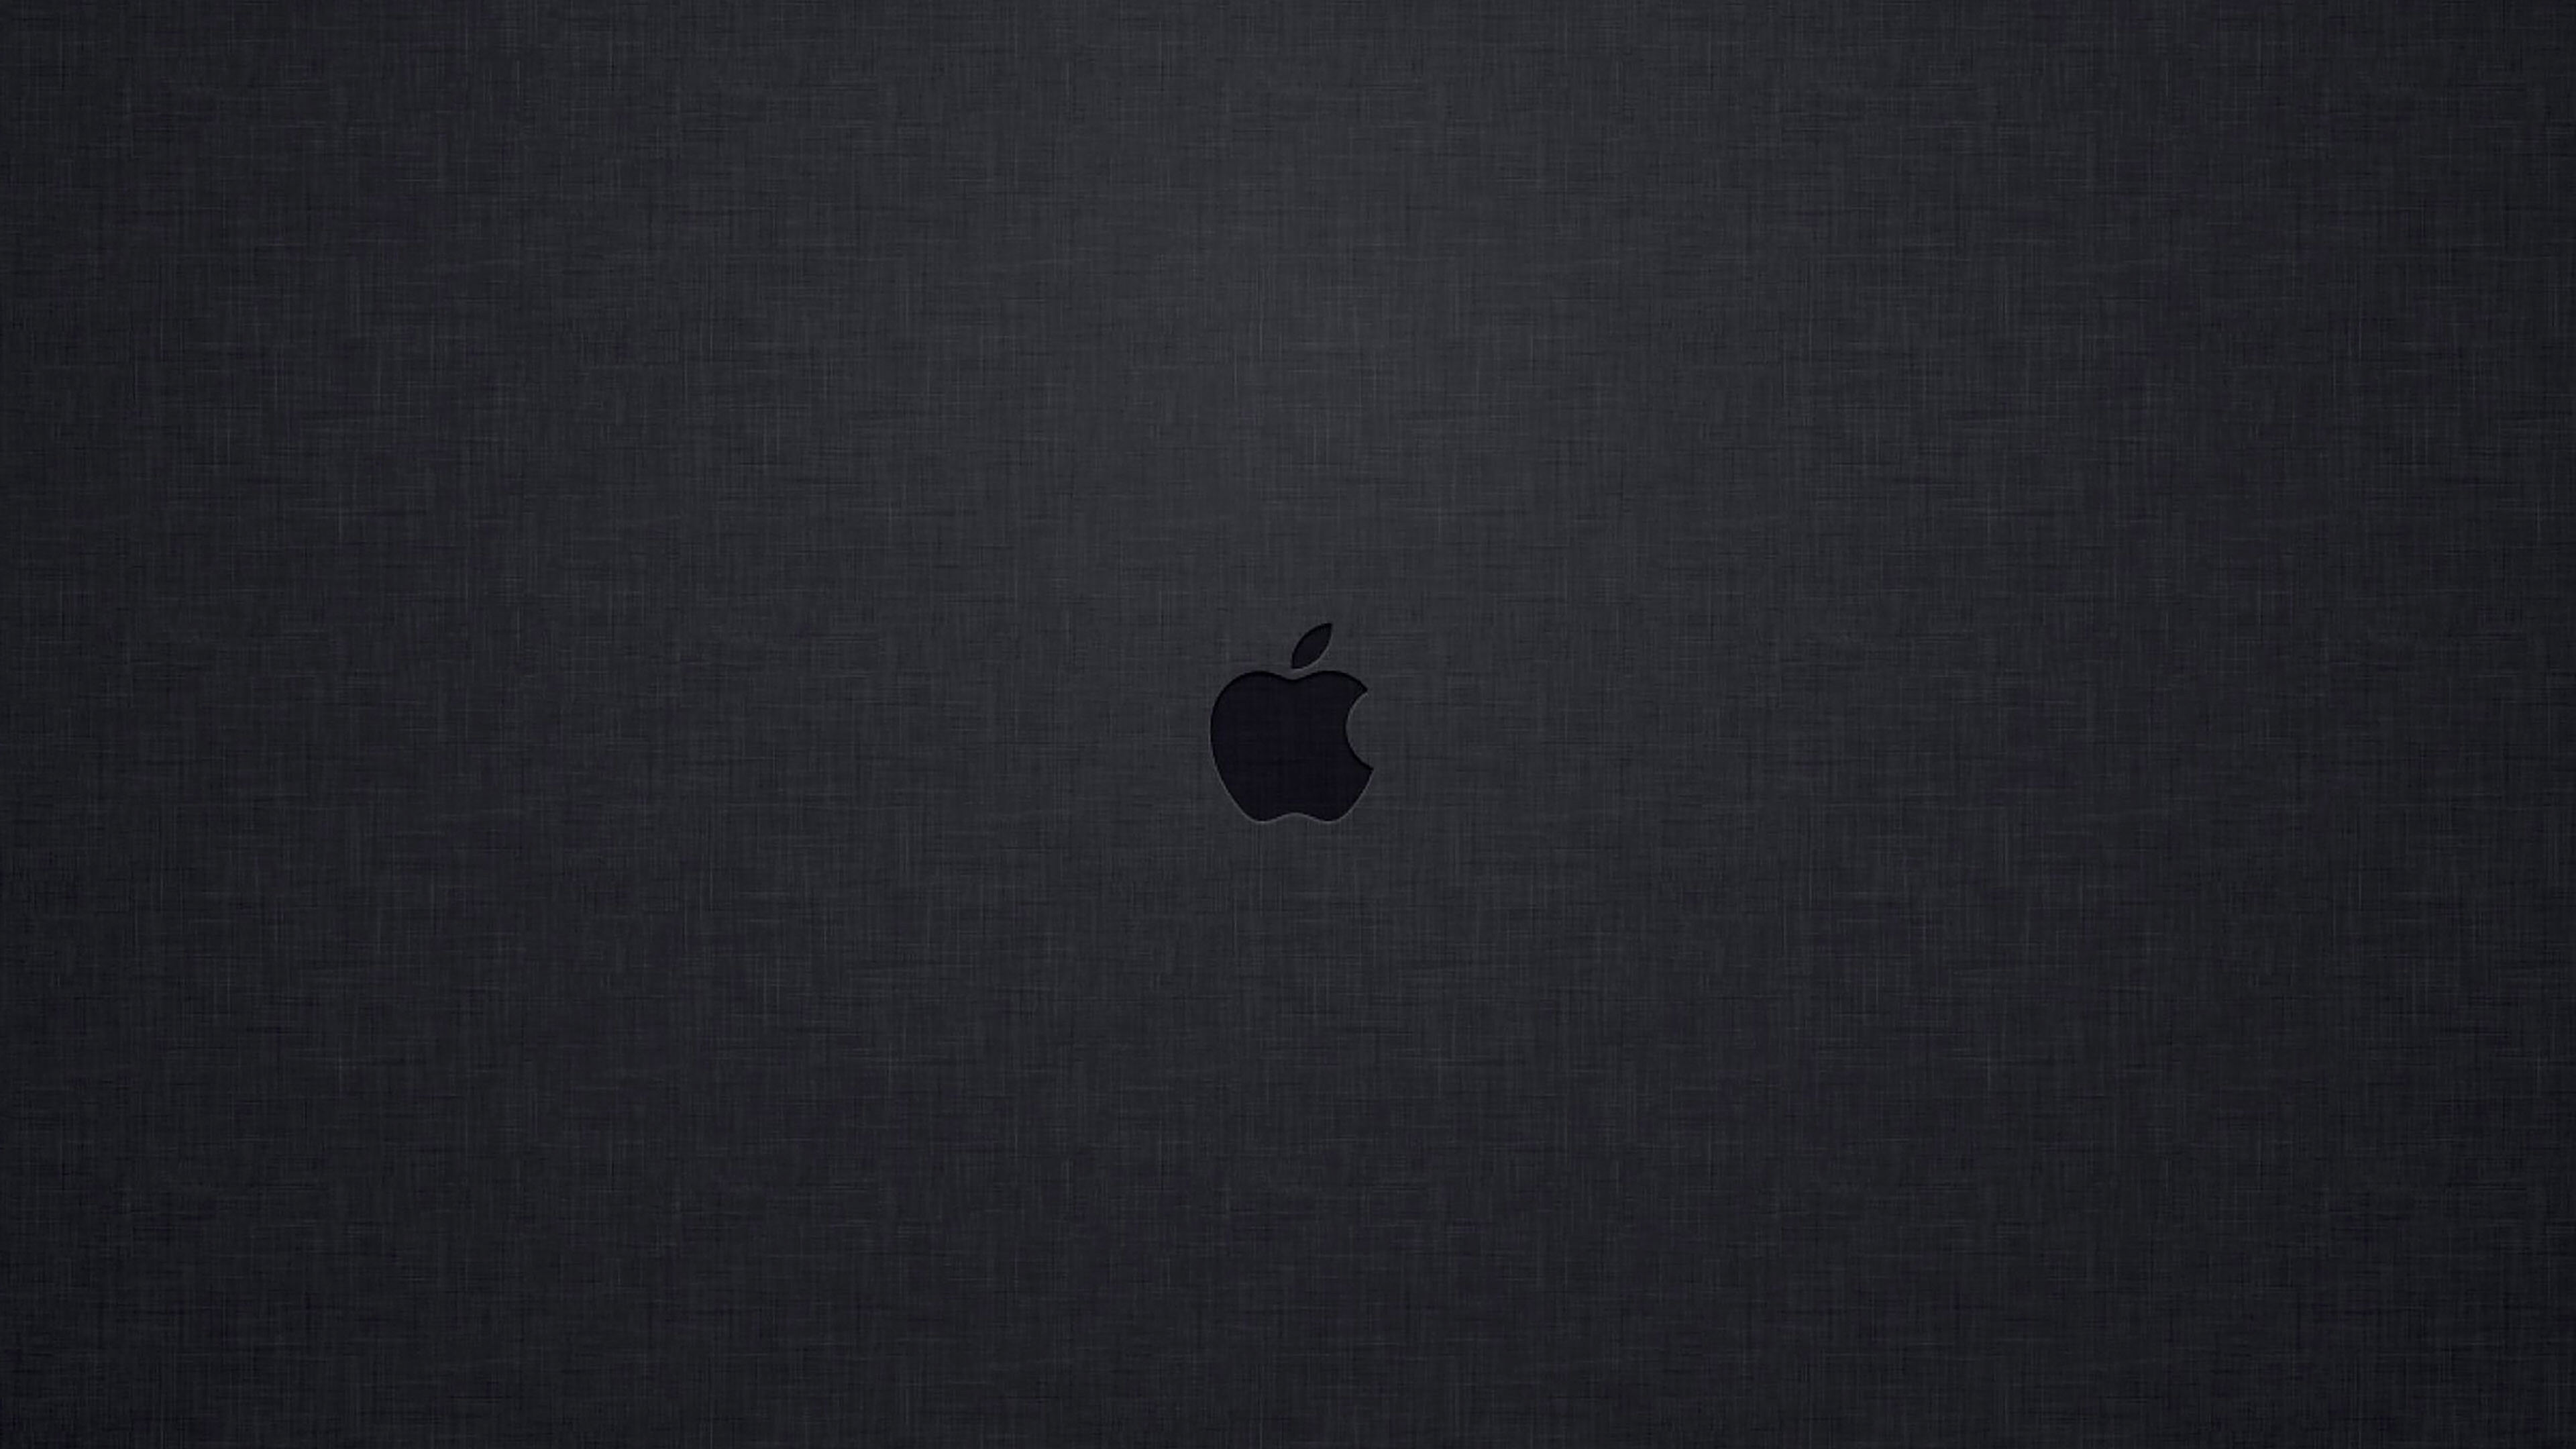 Apple Logo: An American multinational corporation, Steve Jobs. 3840x2160 4K Wallpaper.